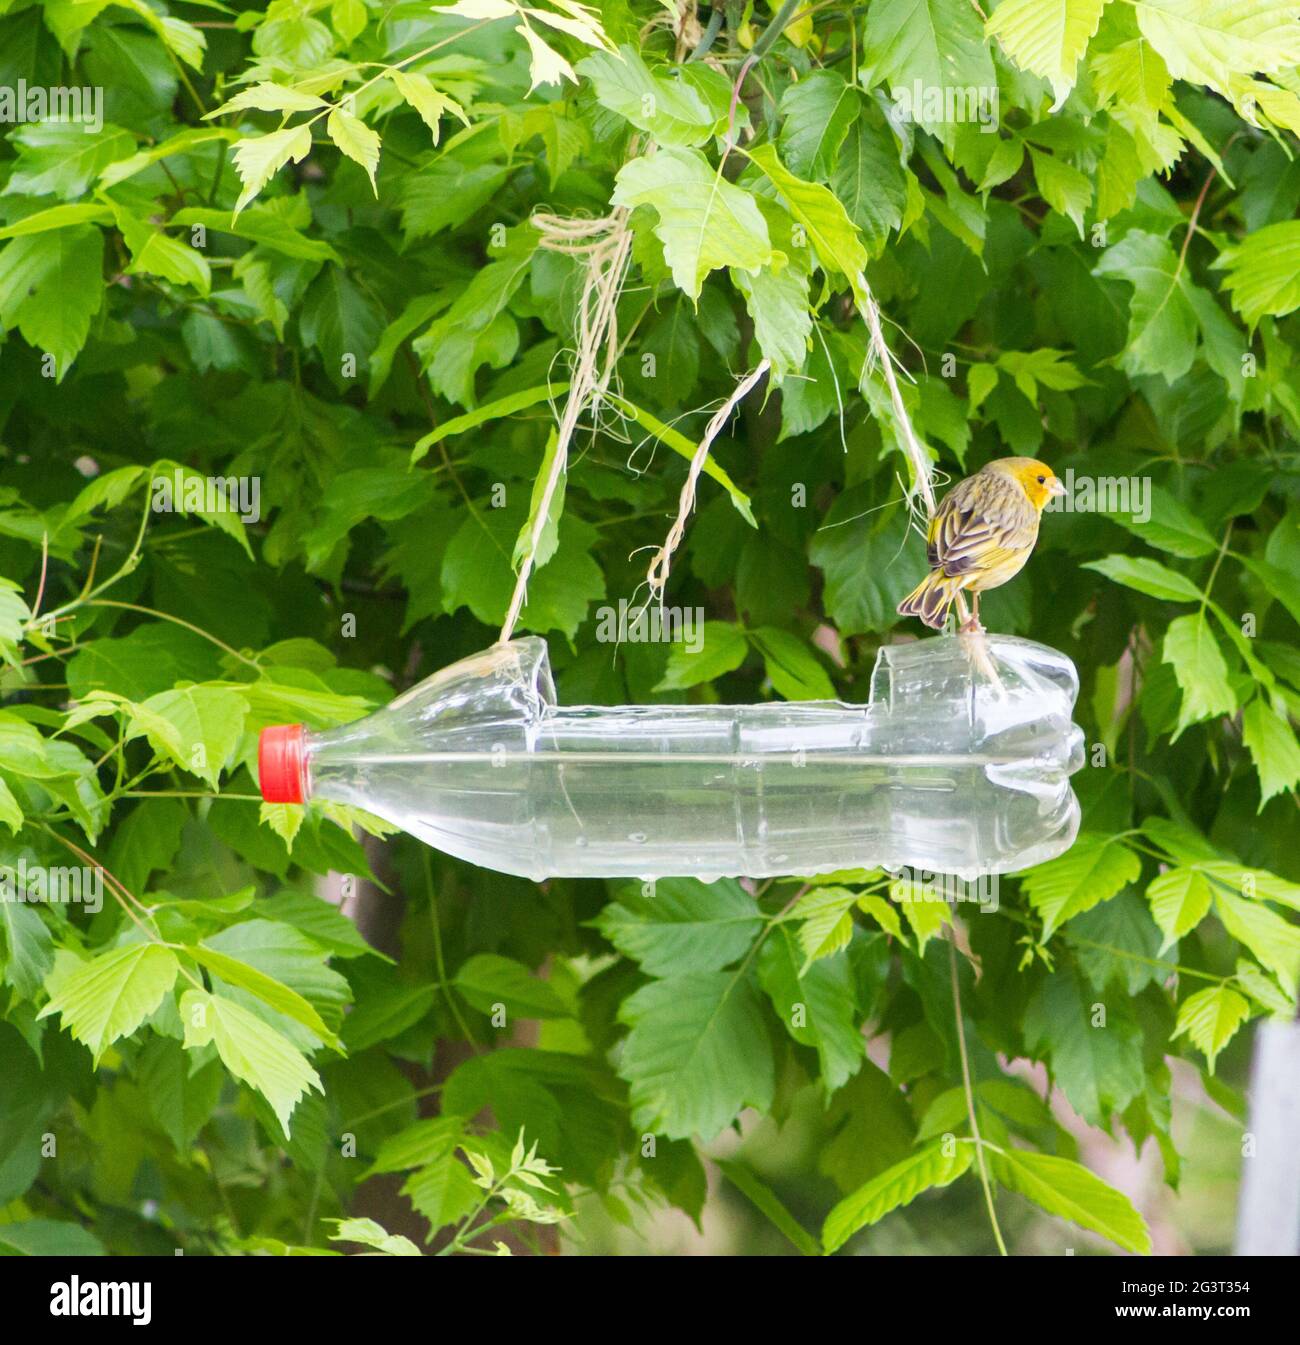 Futterautomaten und Trinkgeräte für Vögel aus recycelten Plastikflaschen  Stockfotografie - Alamy